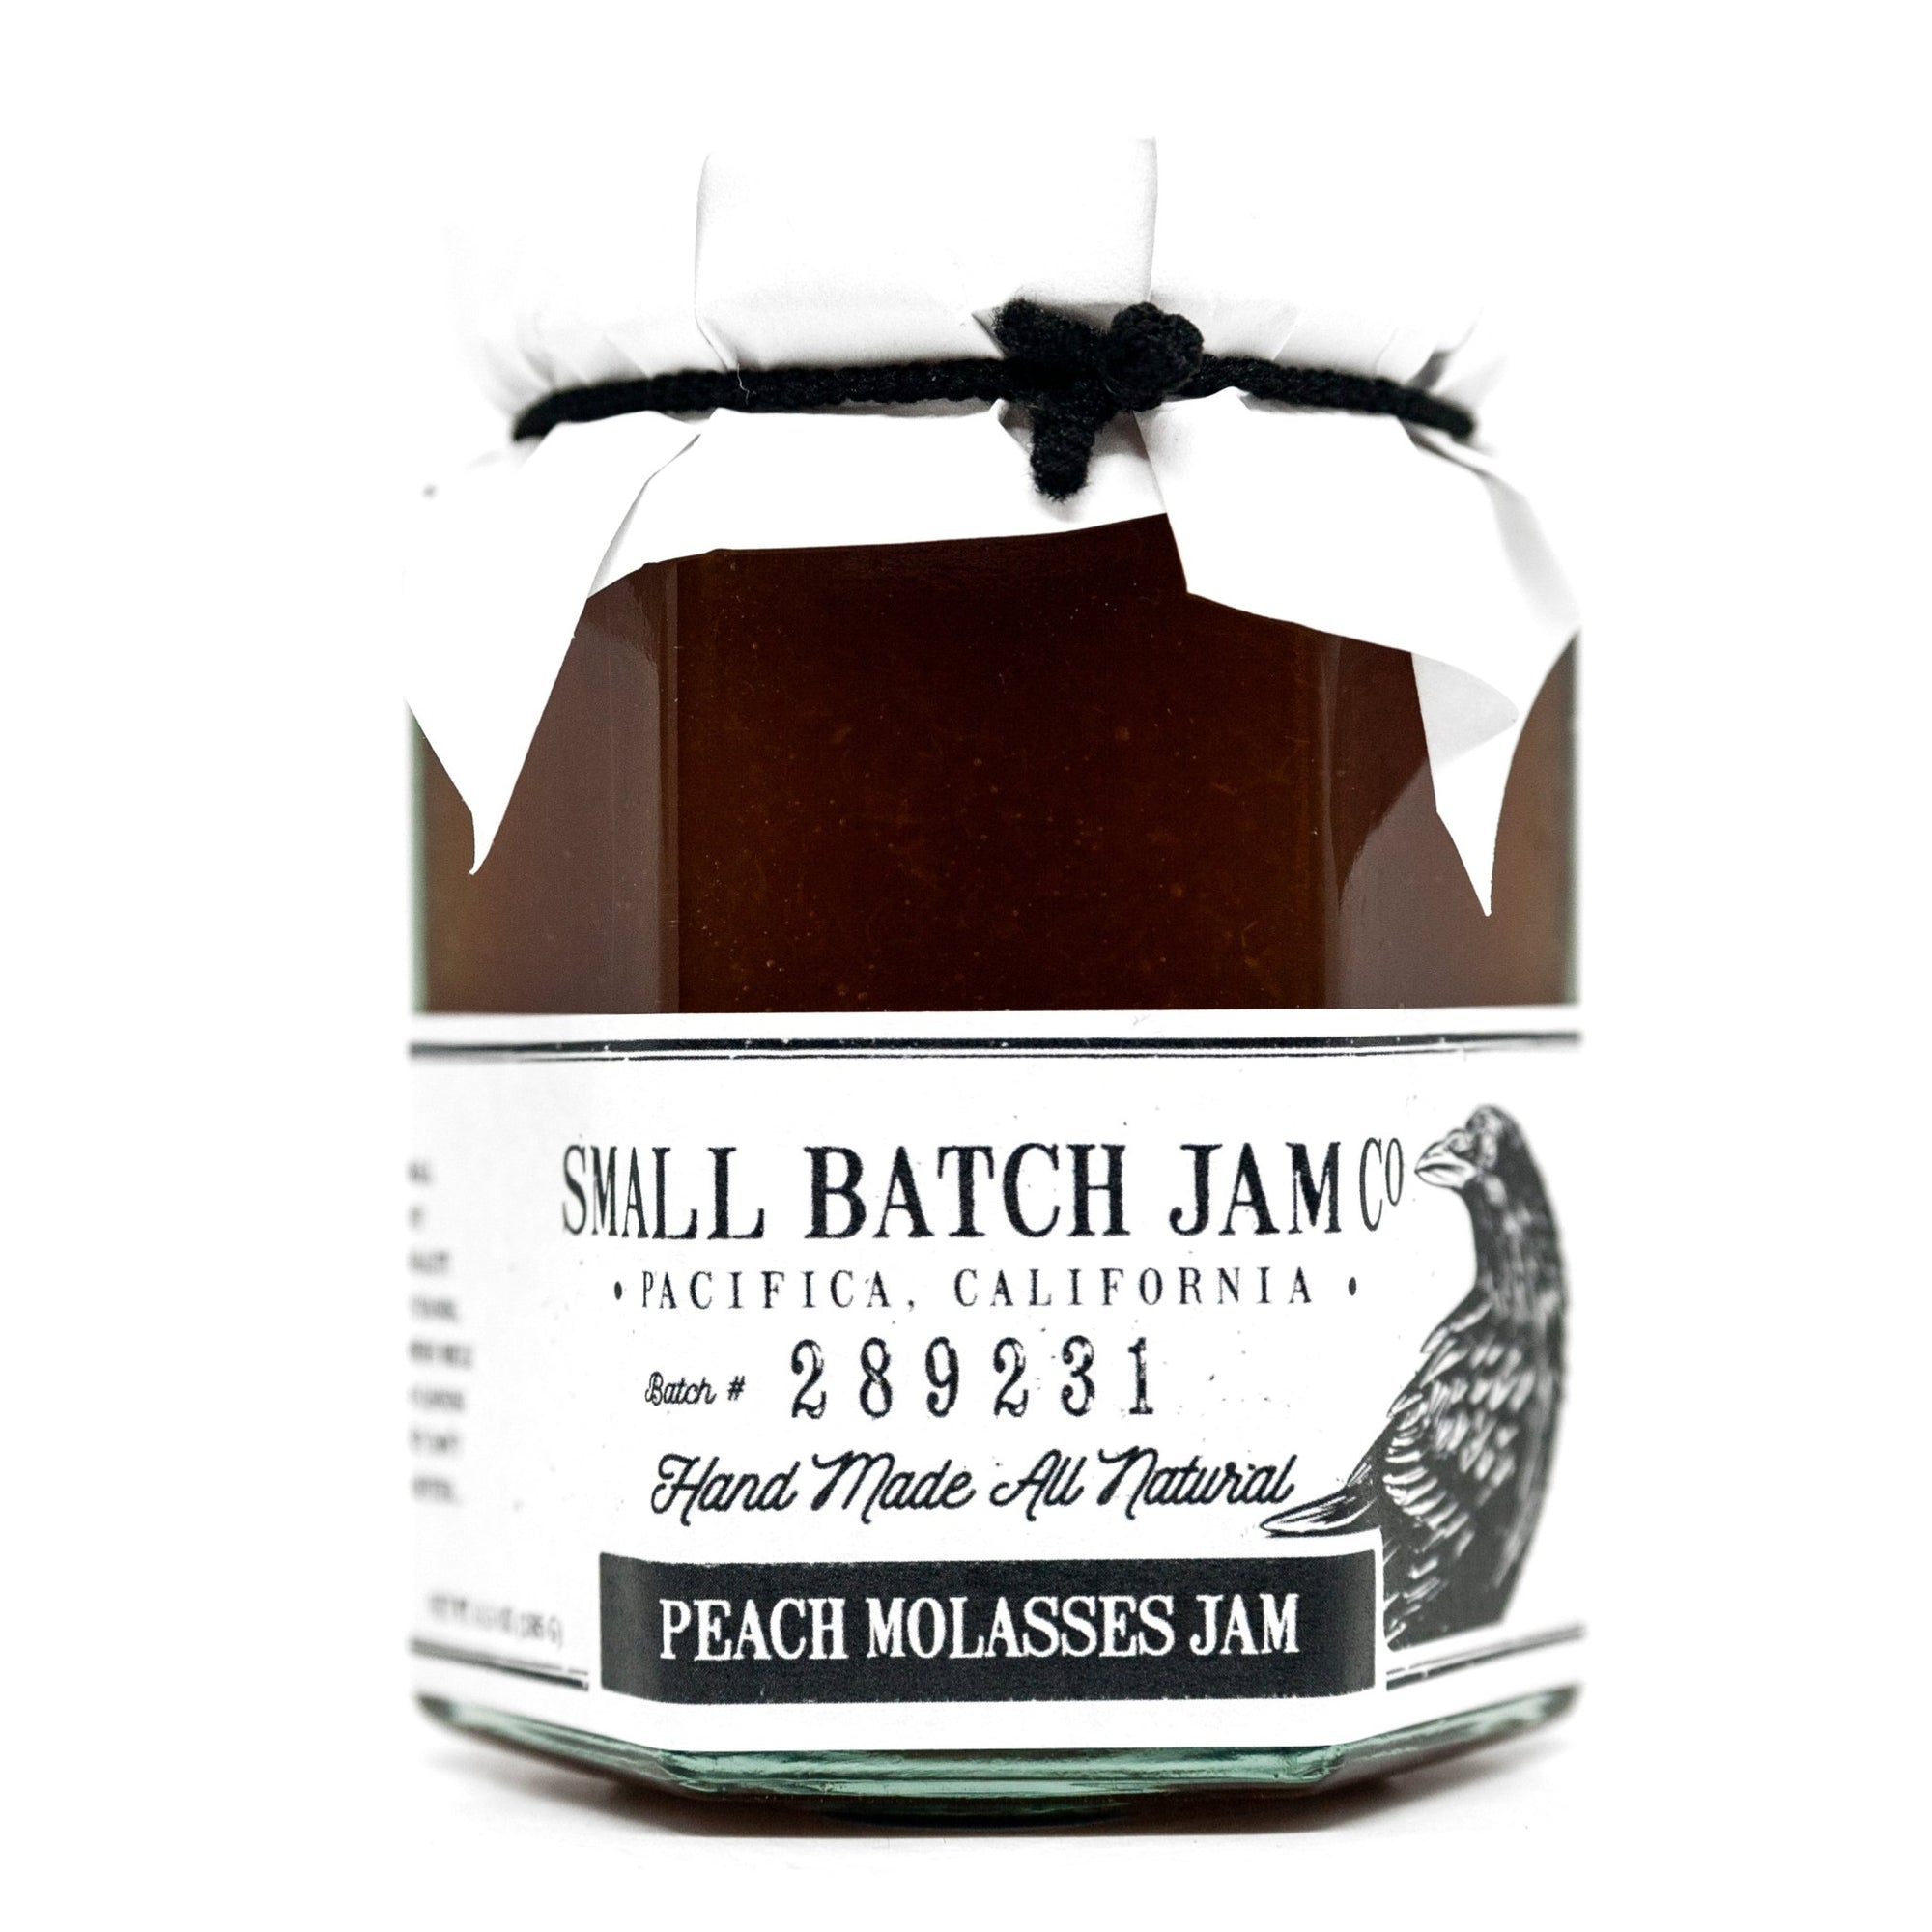 Peach Molasses Jam - Small Batch Jam Co